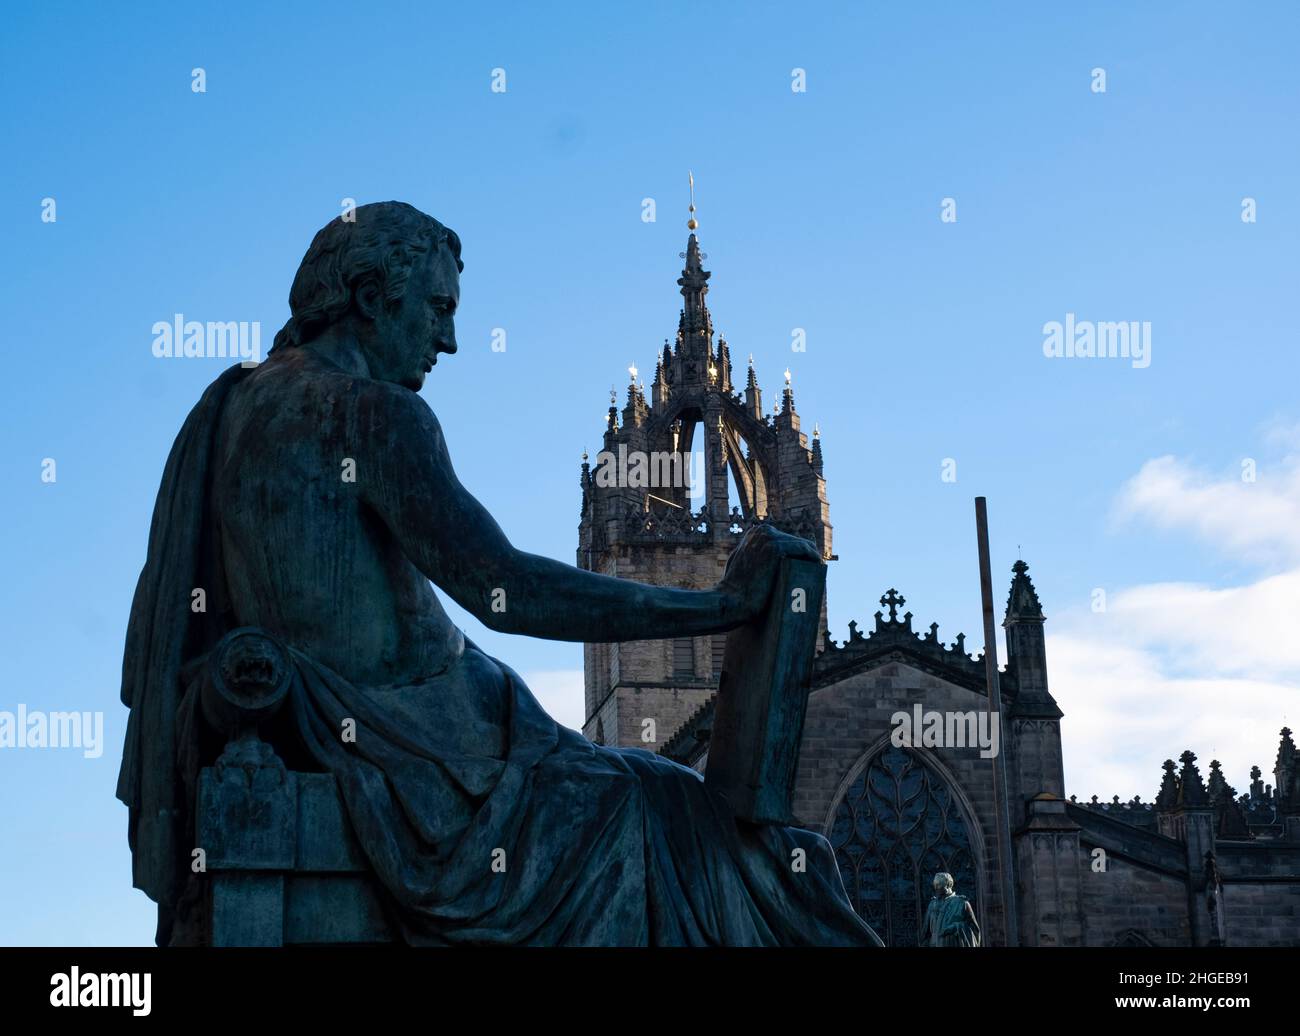 David Hume Statue befindet sich auf der Royal Mile, Edinburgh. Hume war ein schottischer Philosoph der Aufklärung, Historiker, Ökonom, Bibliothekar und Essayist. Stockfoto